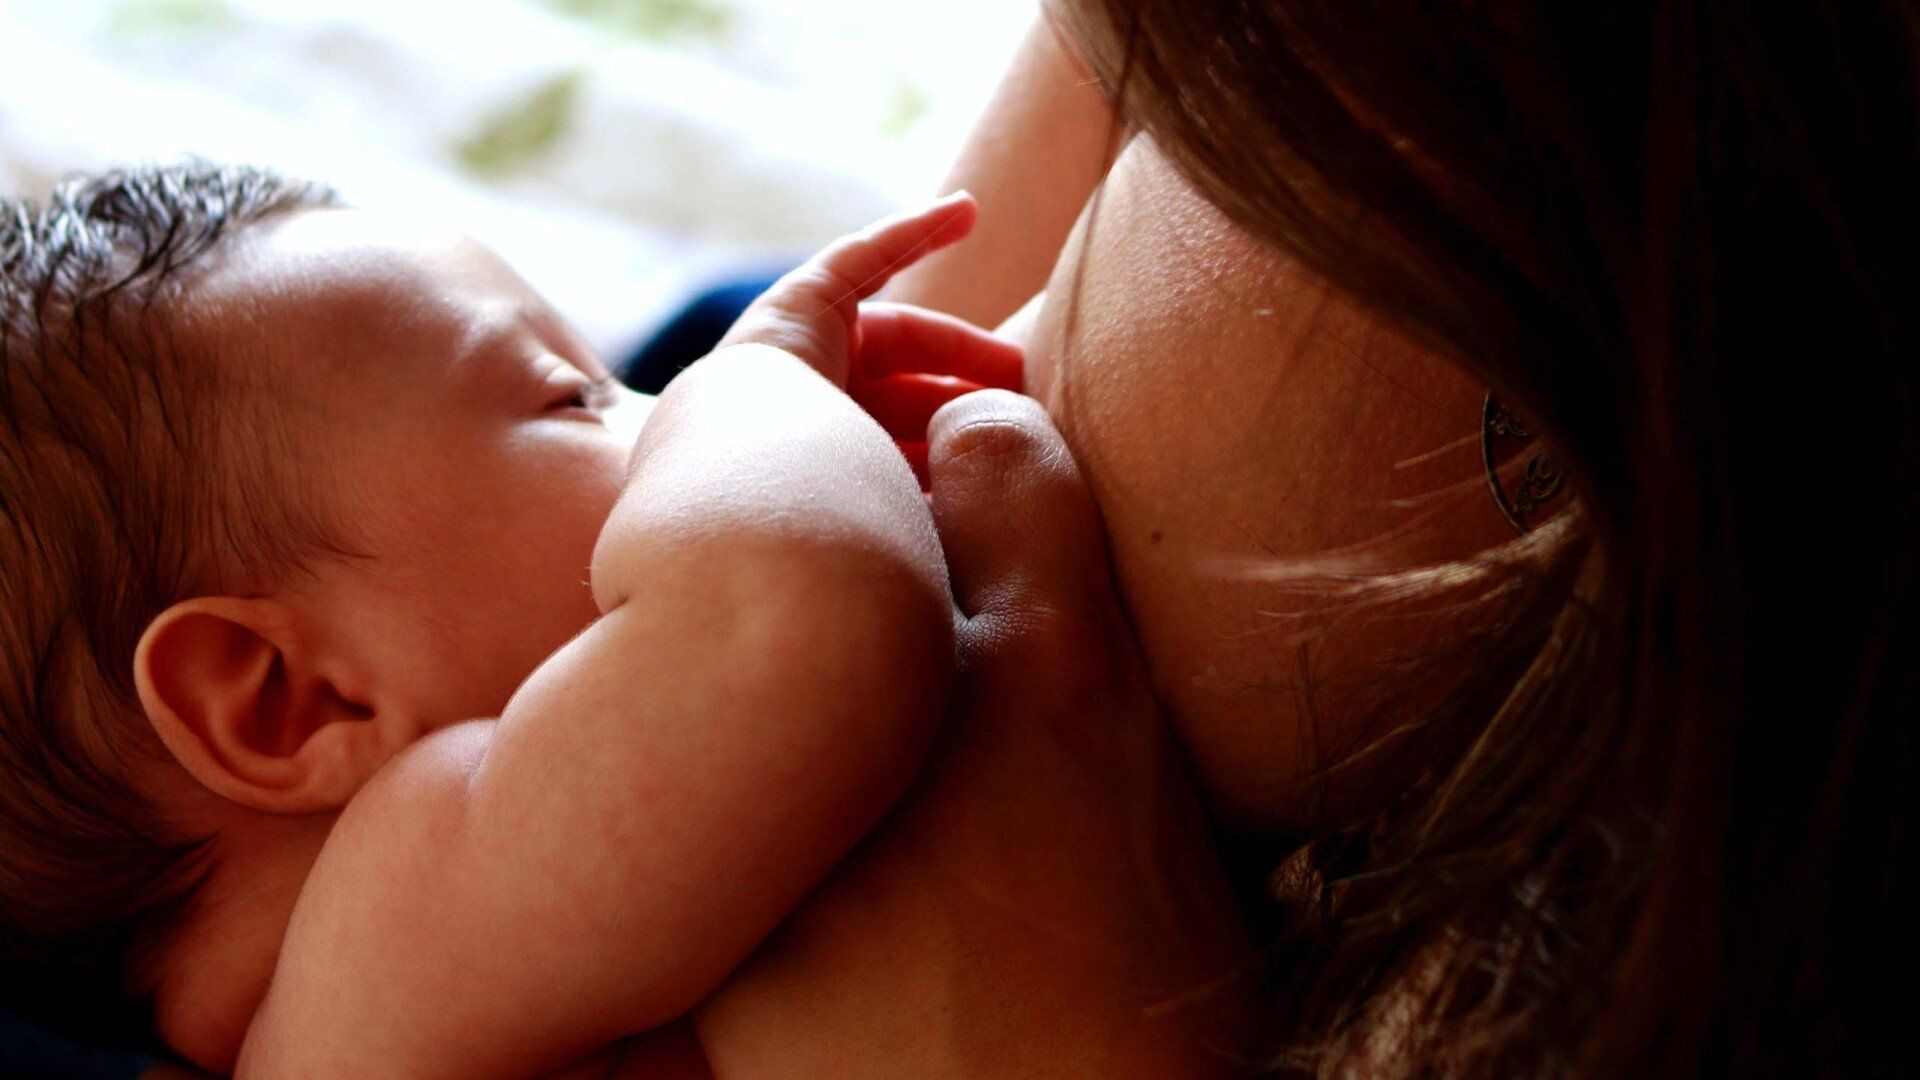 Foto de bebê sendo amamentado, por Luiza Braun